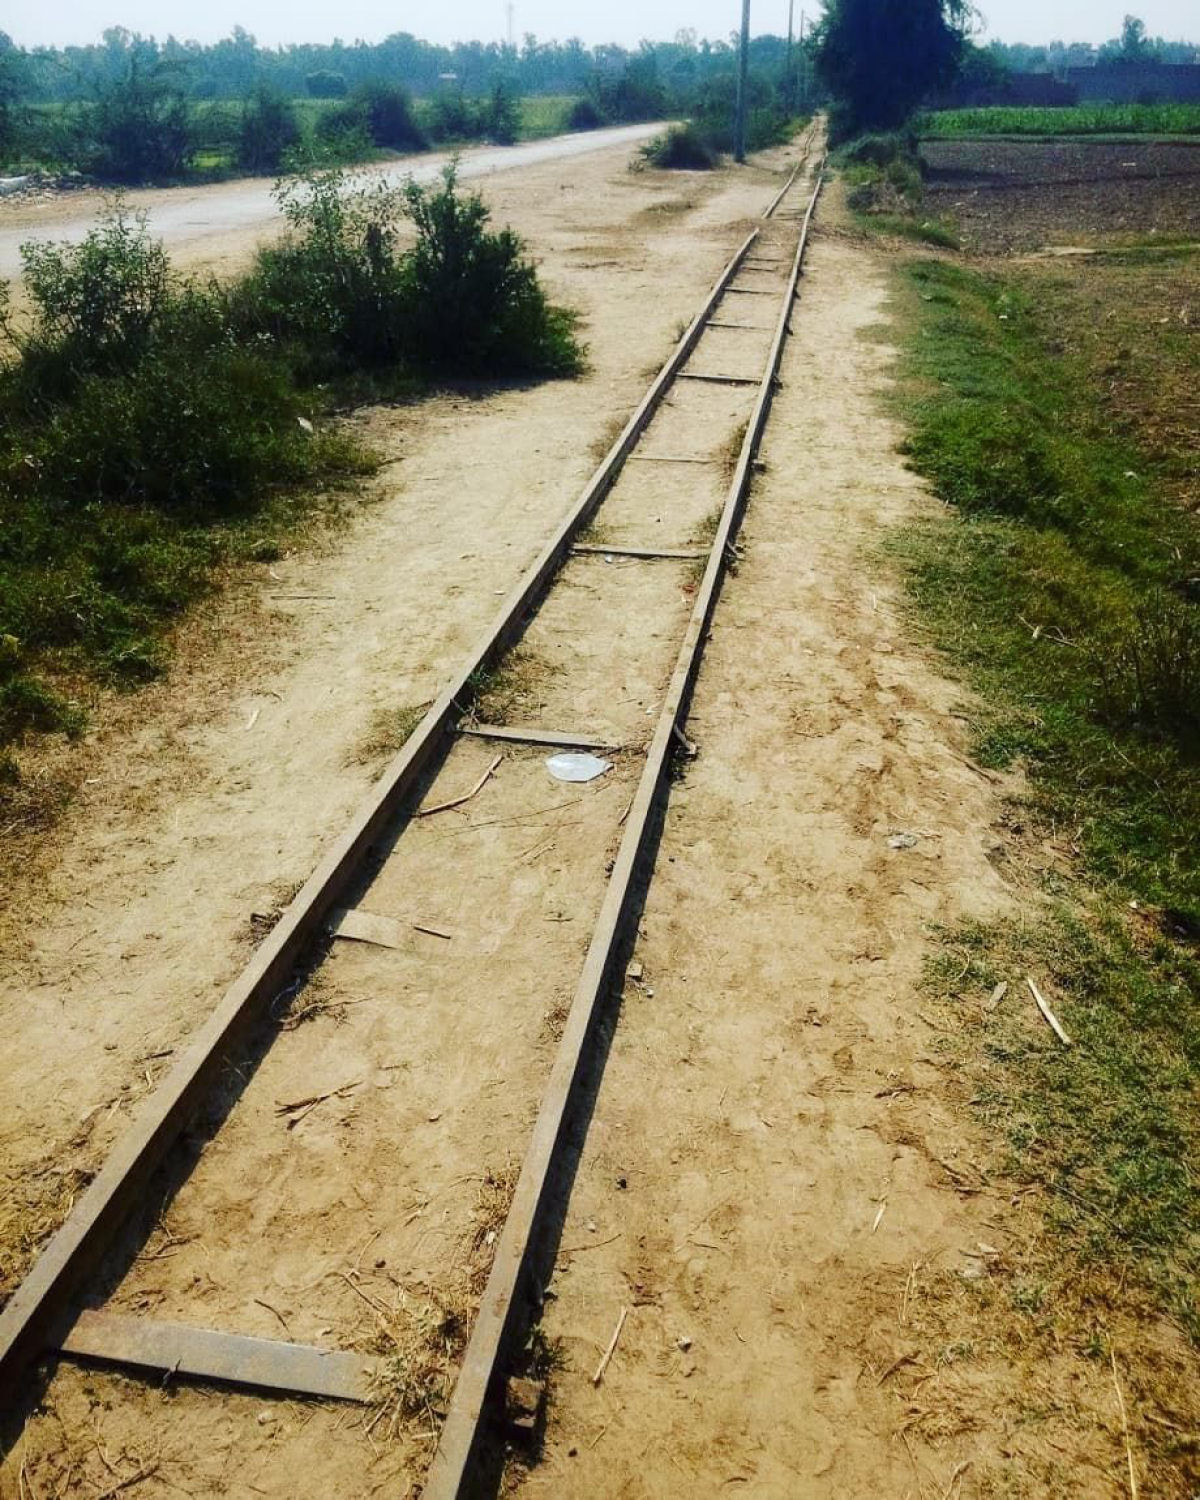 A ferrovia centenária operada por cavalos construída por um filantropo extraordinário no Paquistão